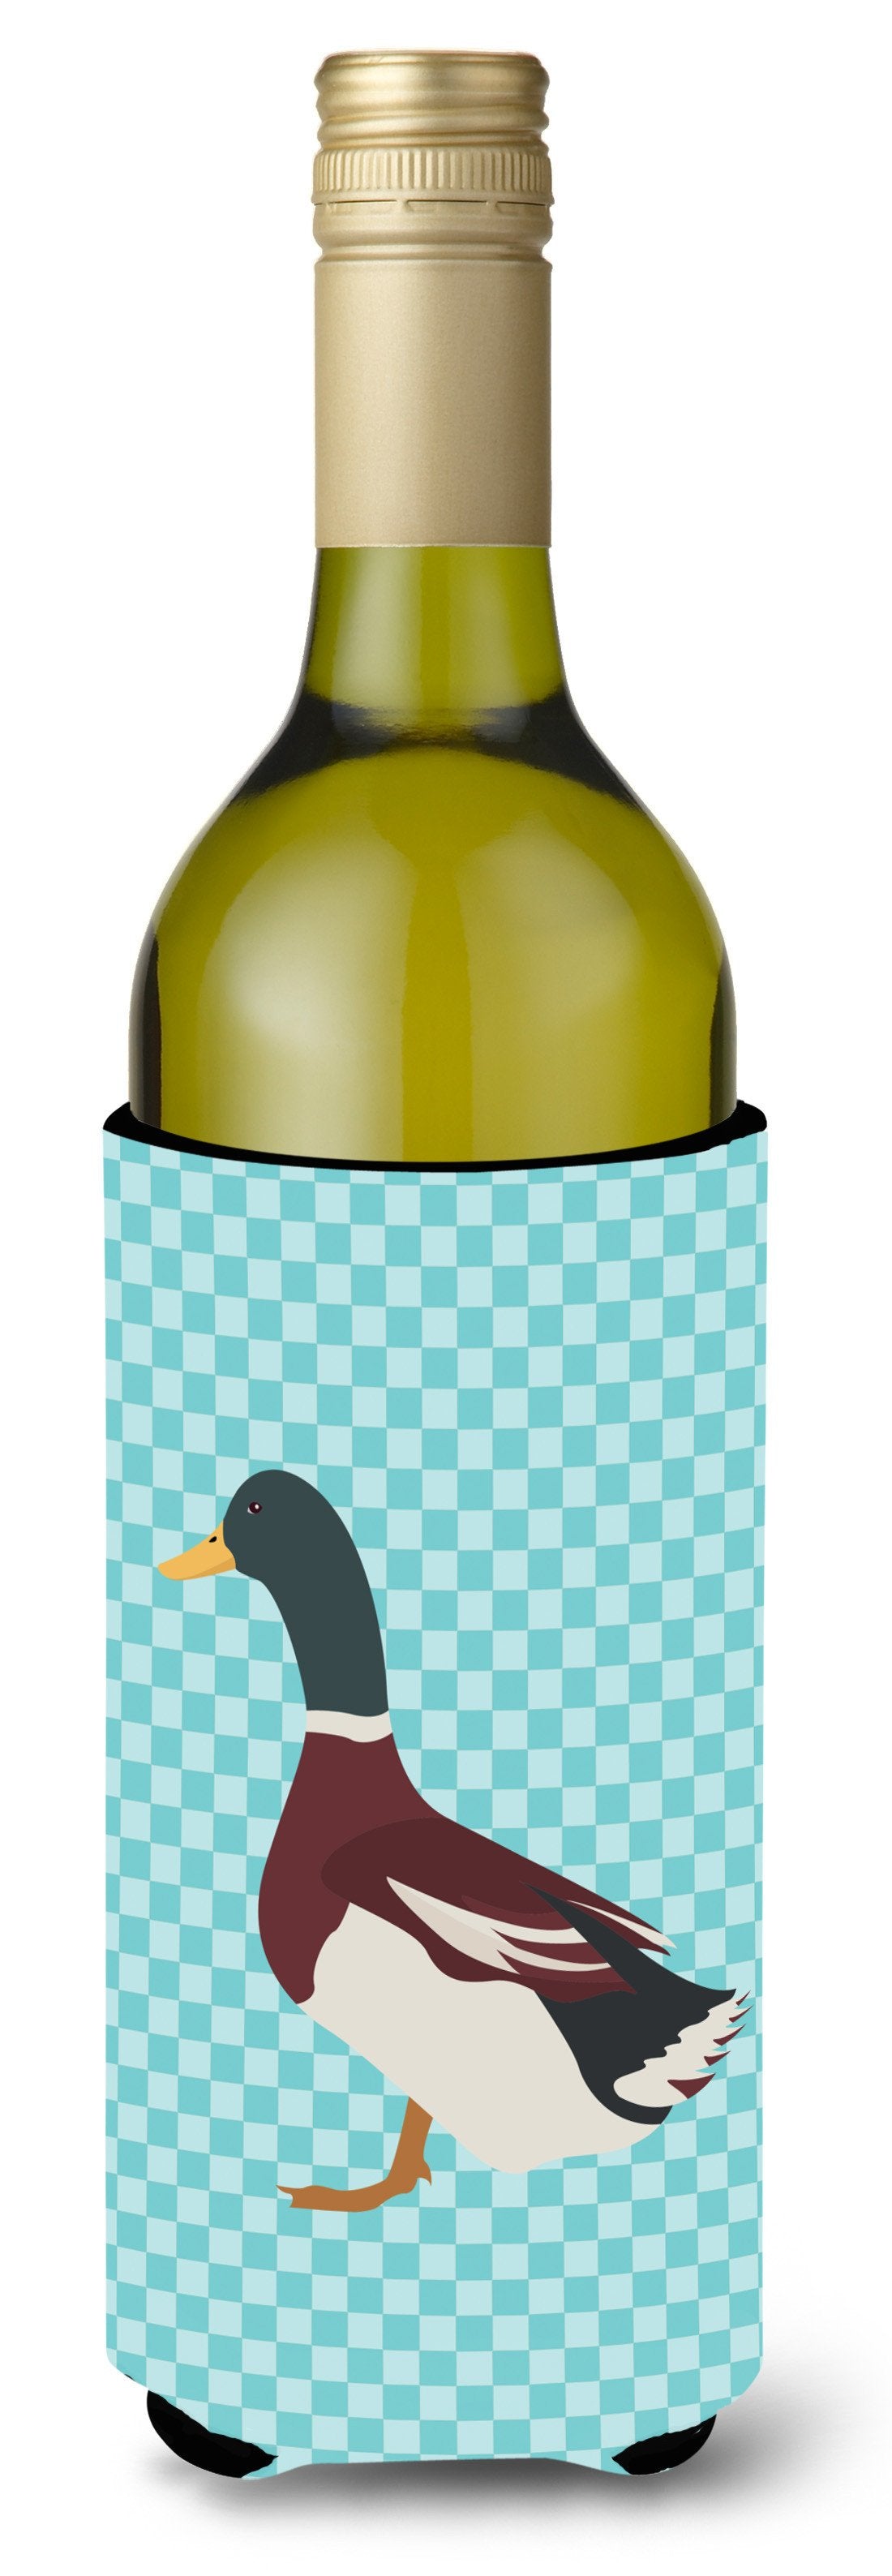 Rouen Duck Blue Check Wine Bottle Beverge Insulator Hugger BB8030LITERK by Caroline's Treasures